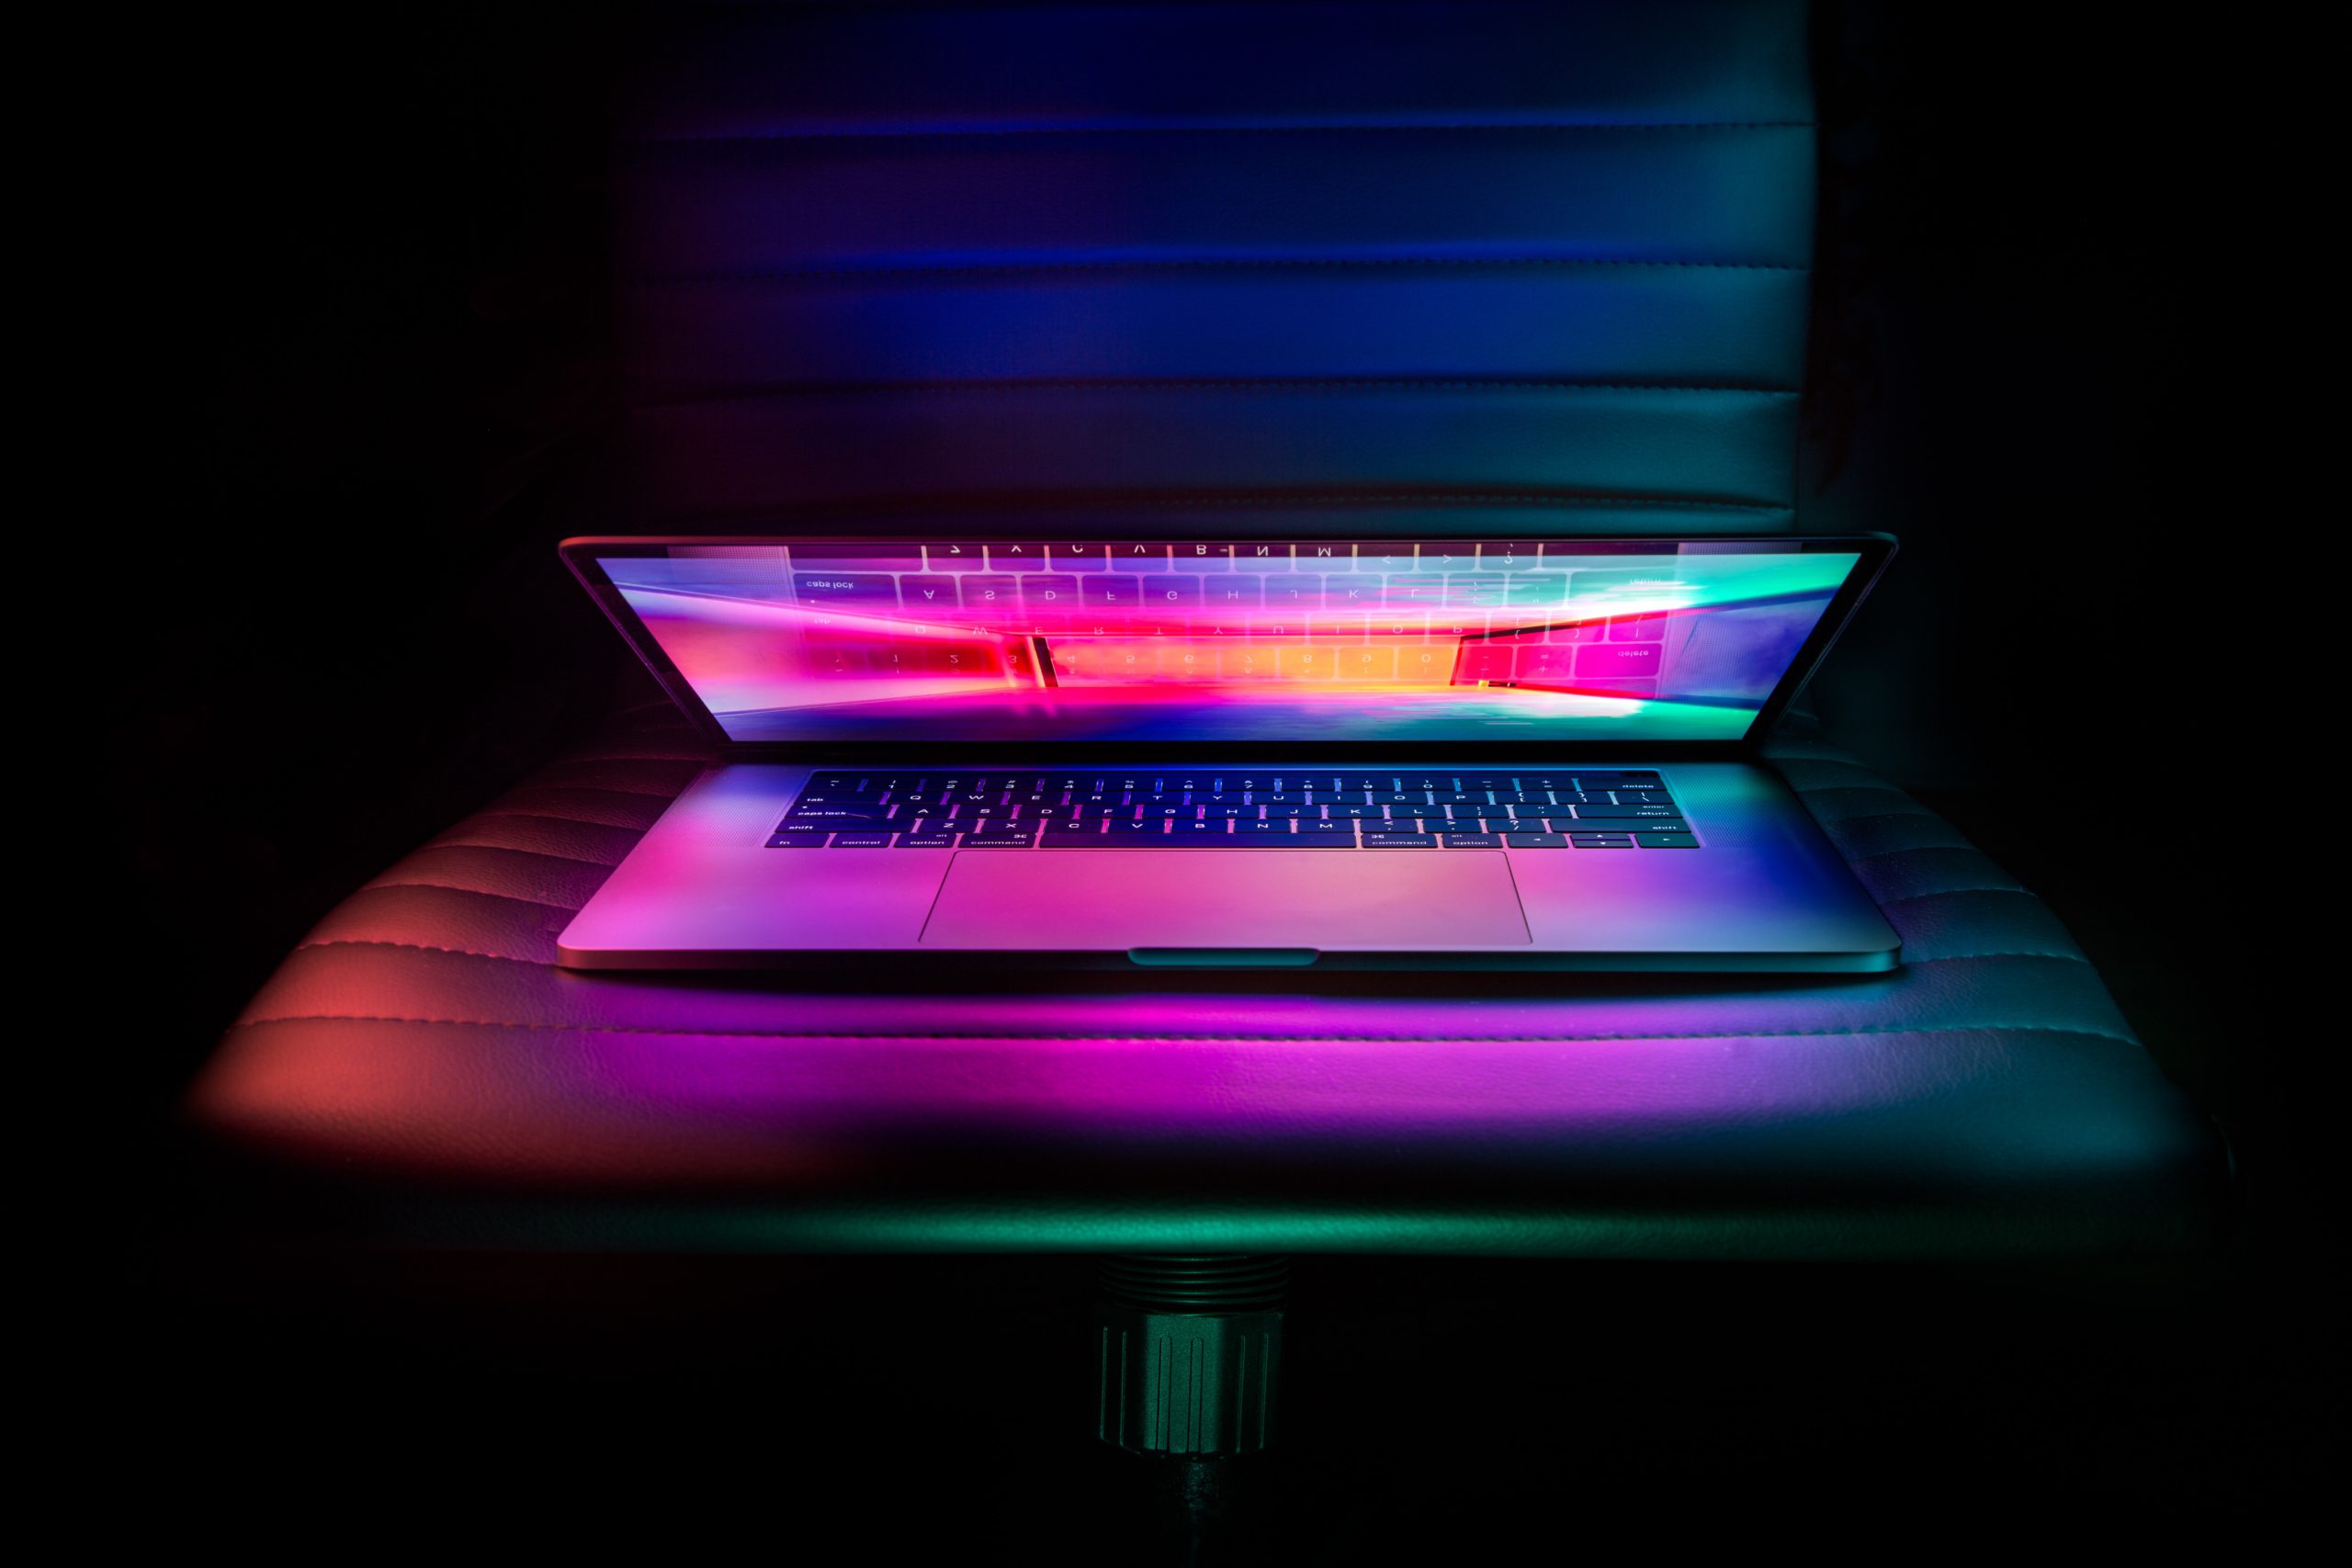 Zu sehen ist ein Laptop, der nur zu 30 Grad geöffnet ist und bunt leuchtet. Ob sich darauf Hakbit-Ransomware befindet. Bild: Unsplash/Edmonds